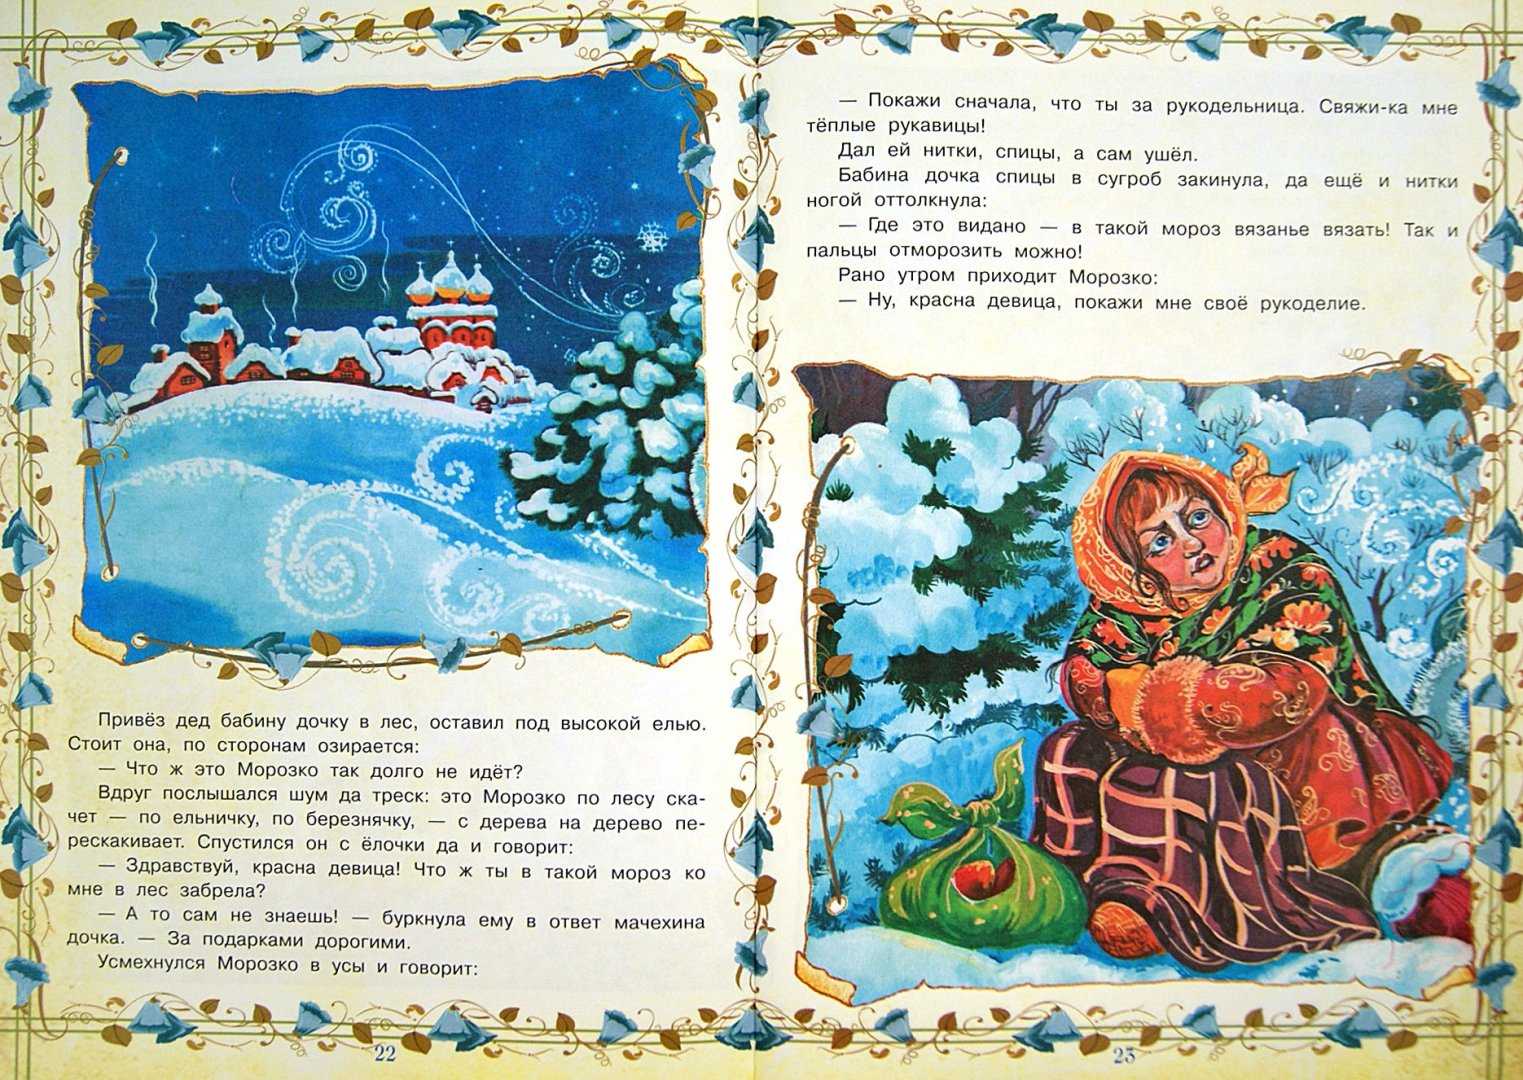 Морозко — сказка для детей ❄ читаем, слушаем и смотрим онлайн ✅